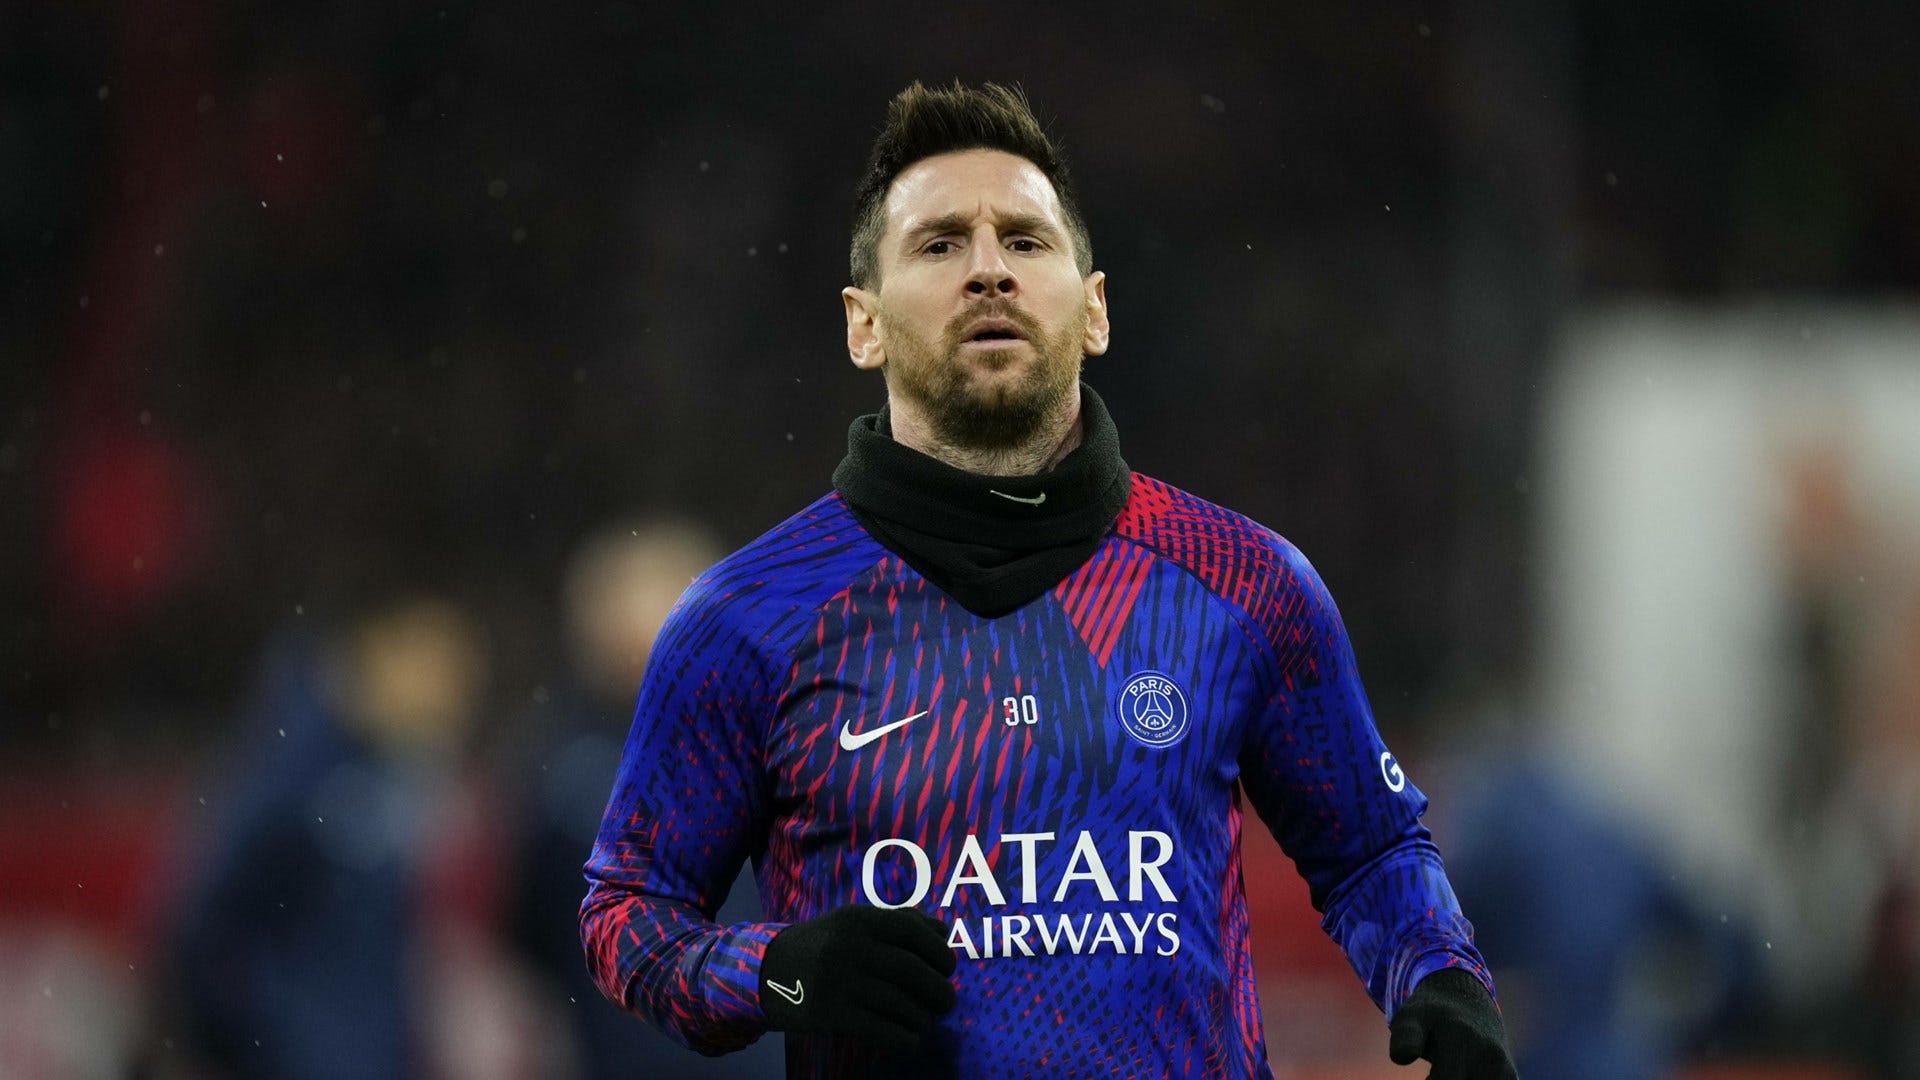 "Wir werden Messi auspfeifen": PSG-Fans planen Protest gegen den Weltfußballer